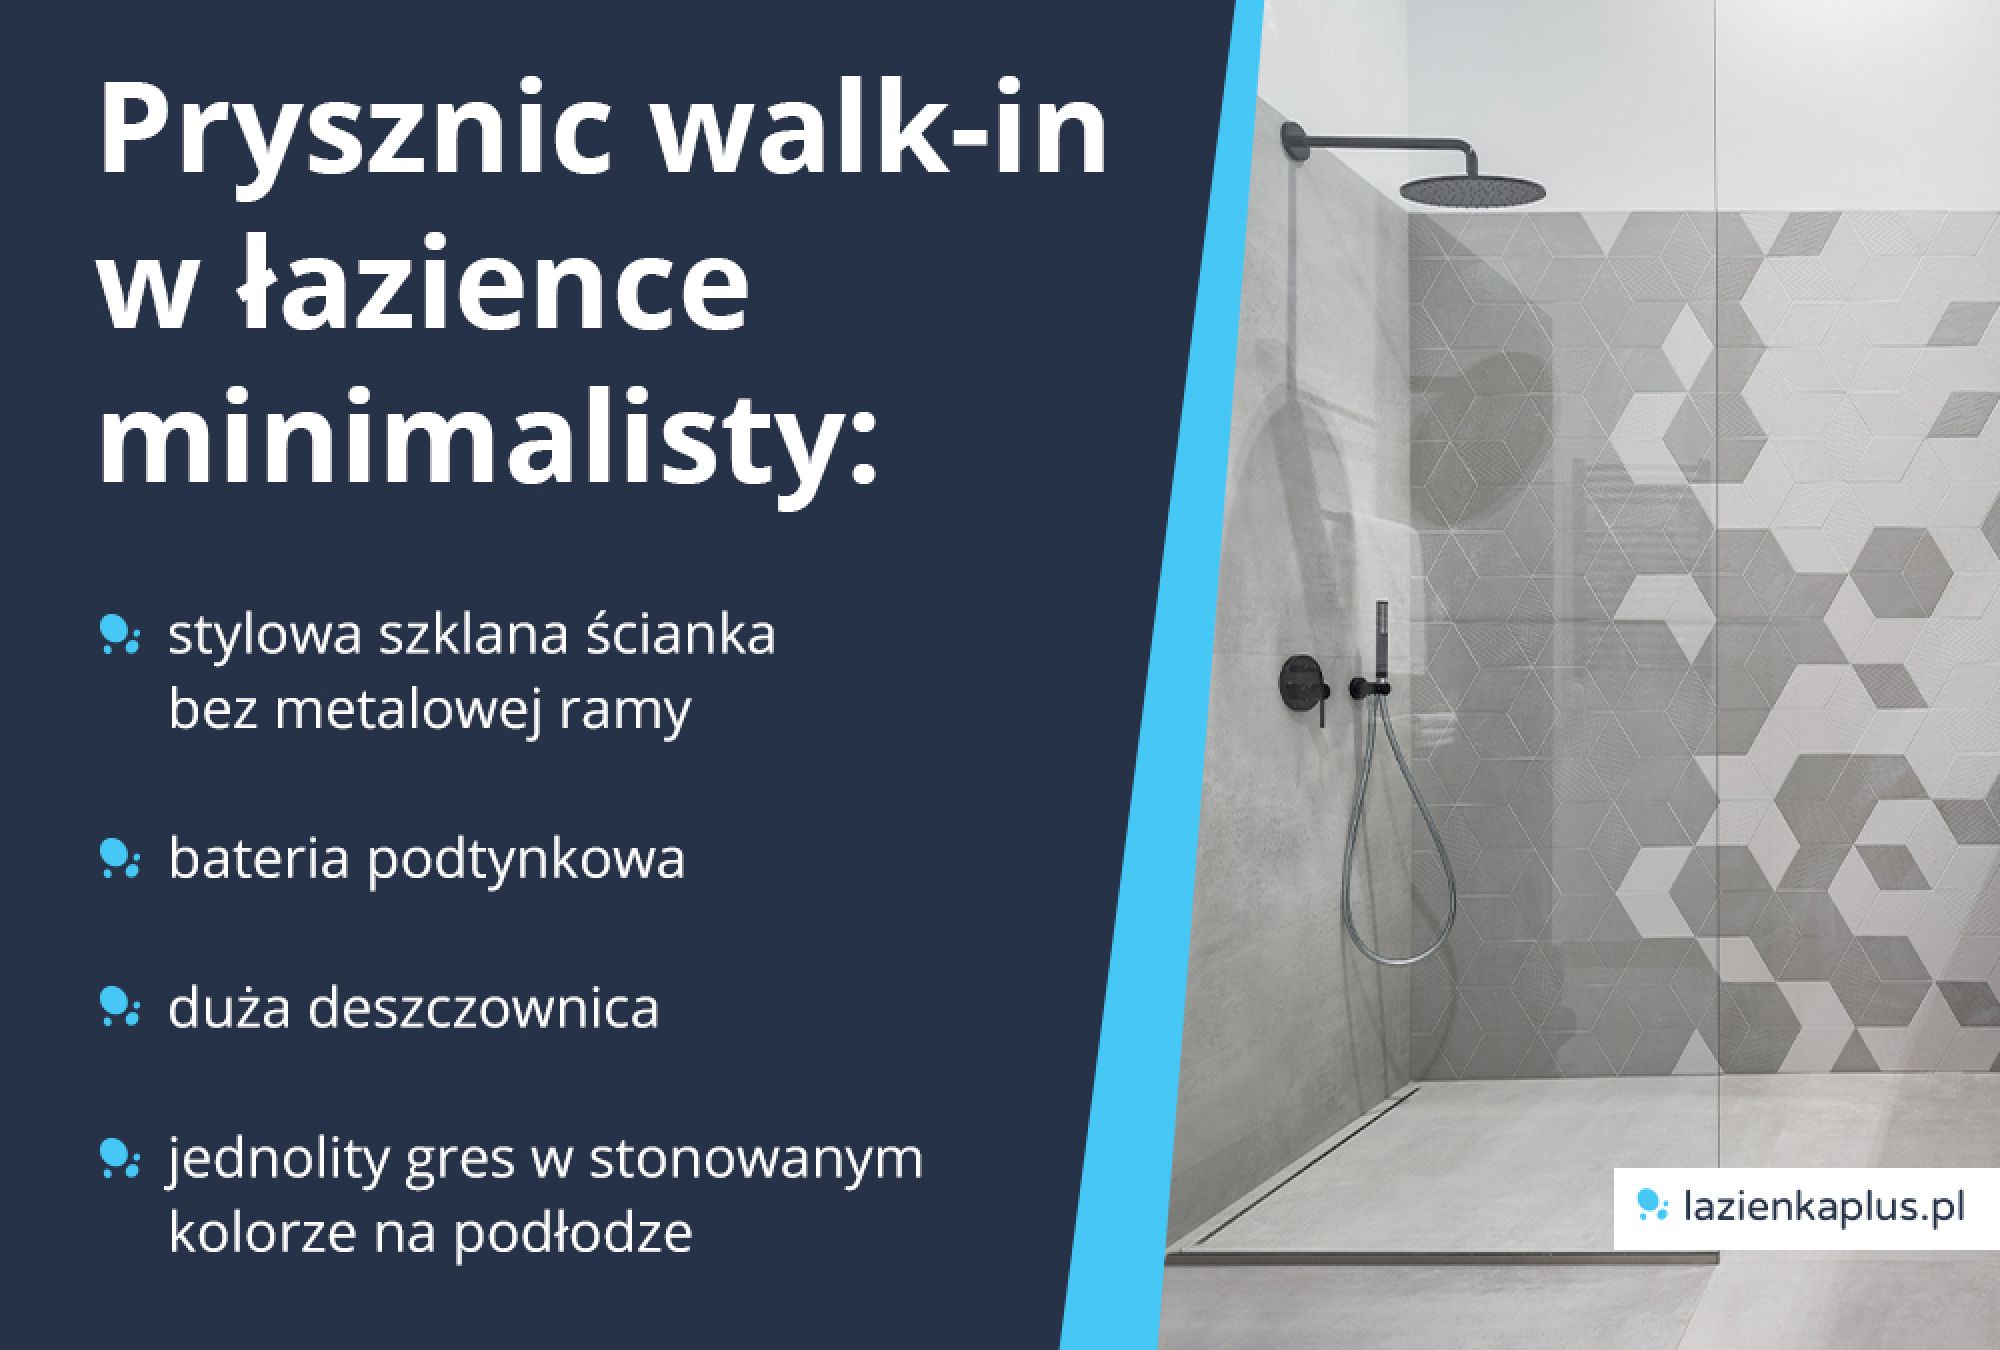 Prysznic walk-in w łazience minimalisty: stylowa szklana ścianka bez metalowej ramy, bateria podtynkowa, duża deszczownica, jednolity gres w stonowanym kolorze na podłodze.